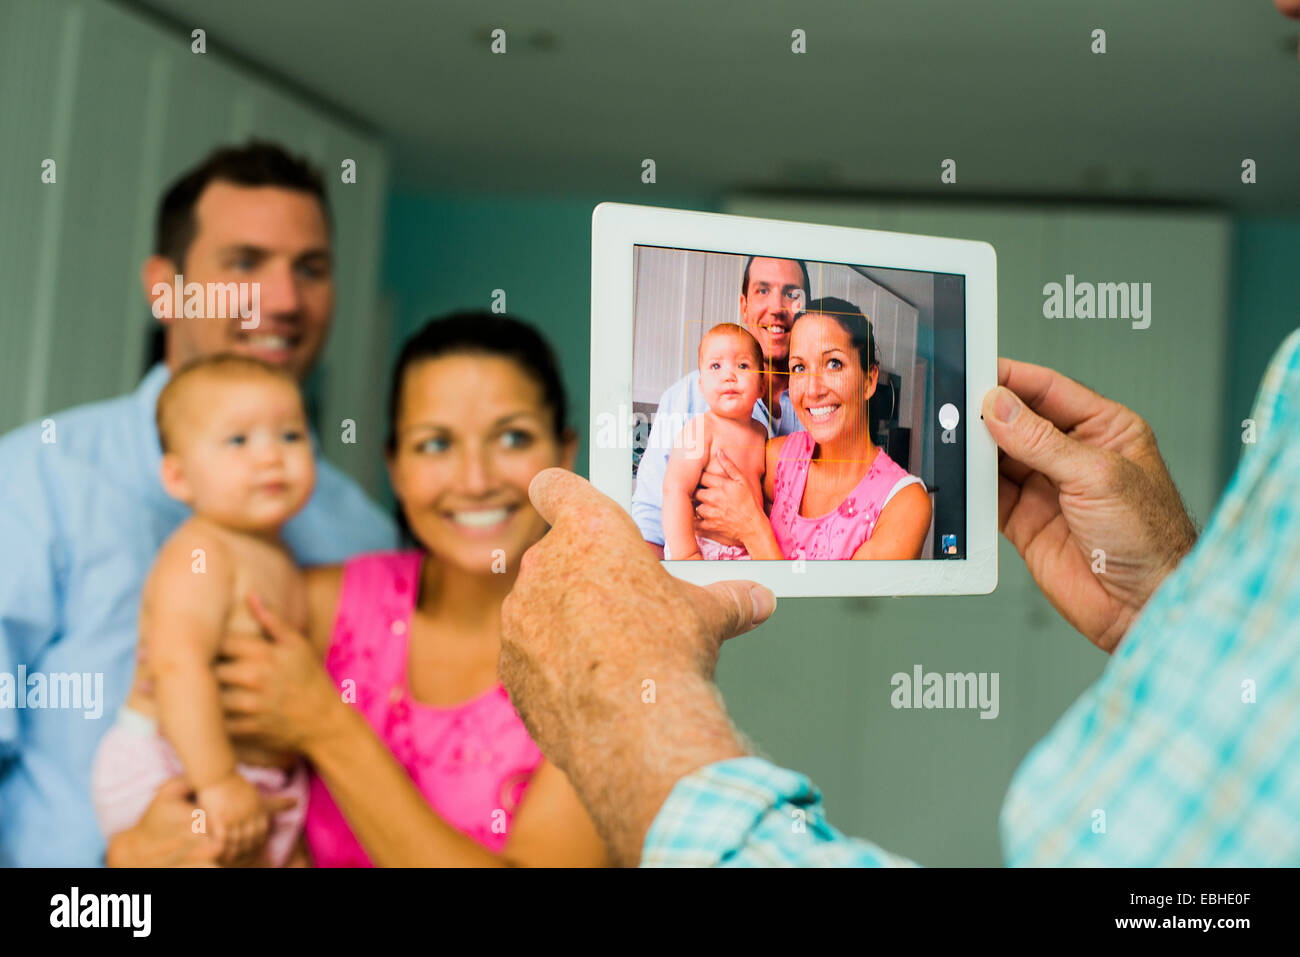 Über Schulter Porträt der Mitte erwachsenes paar und Tochter auf digital-Tablette genommen Stockfoto